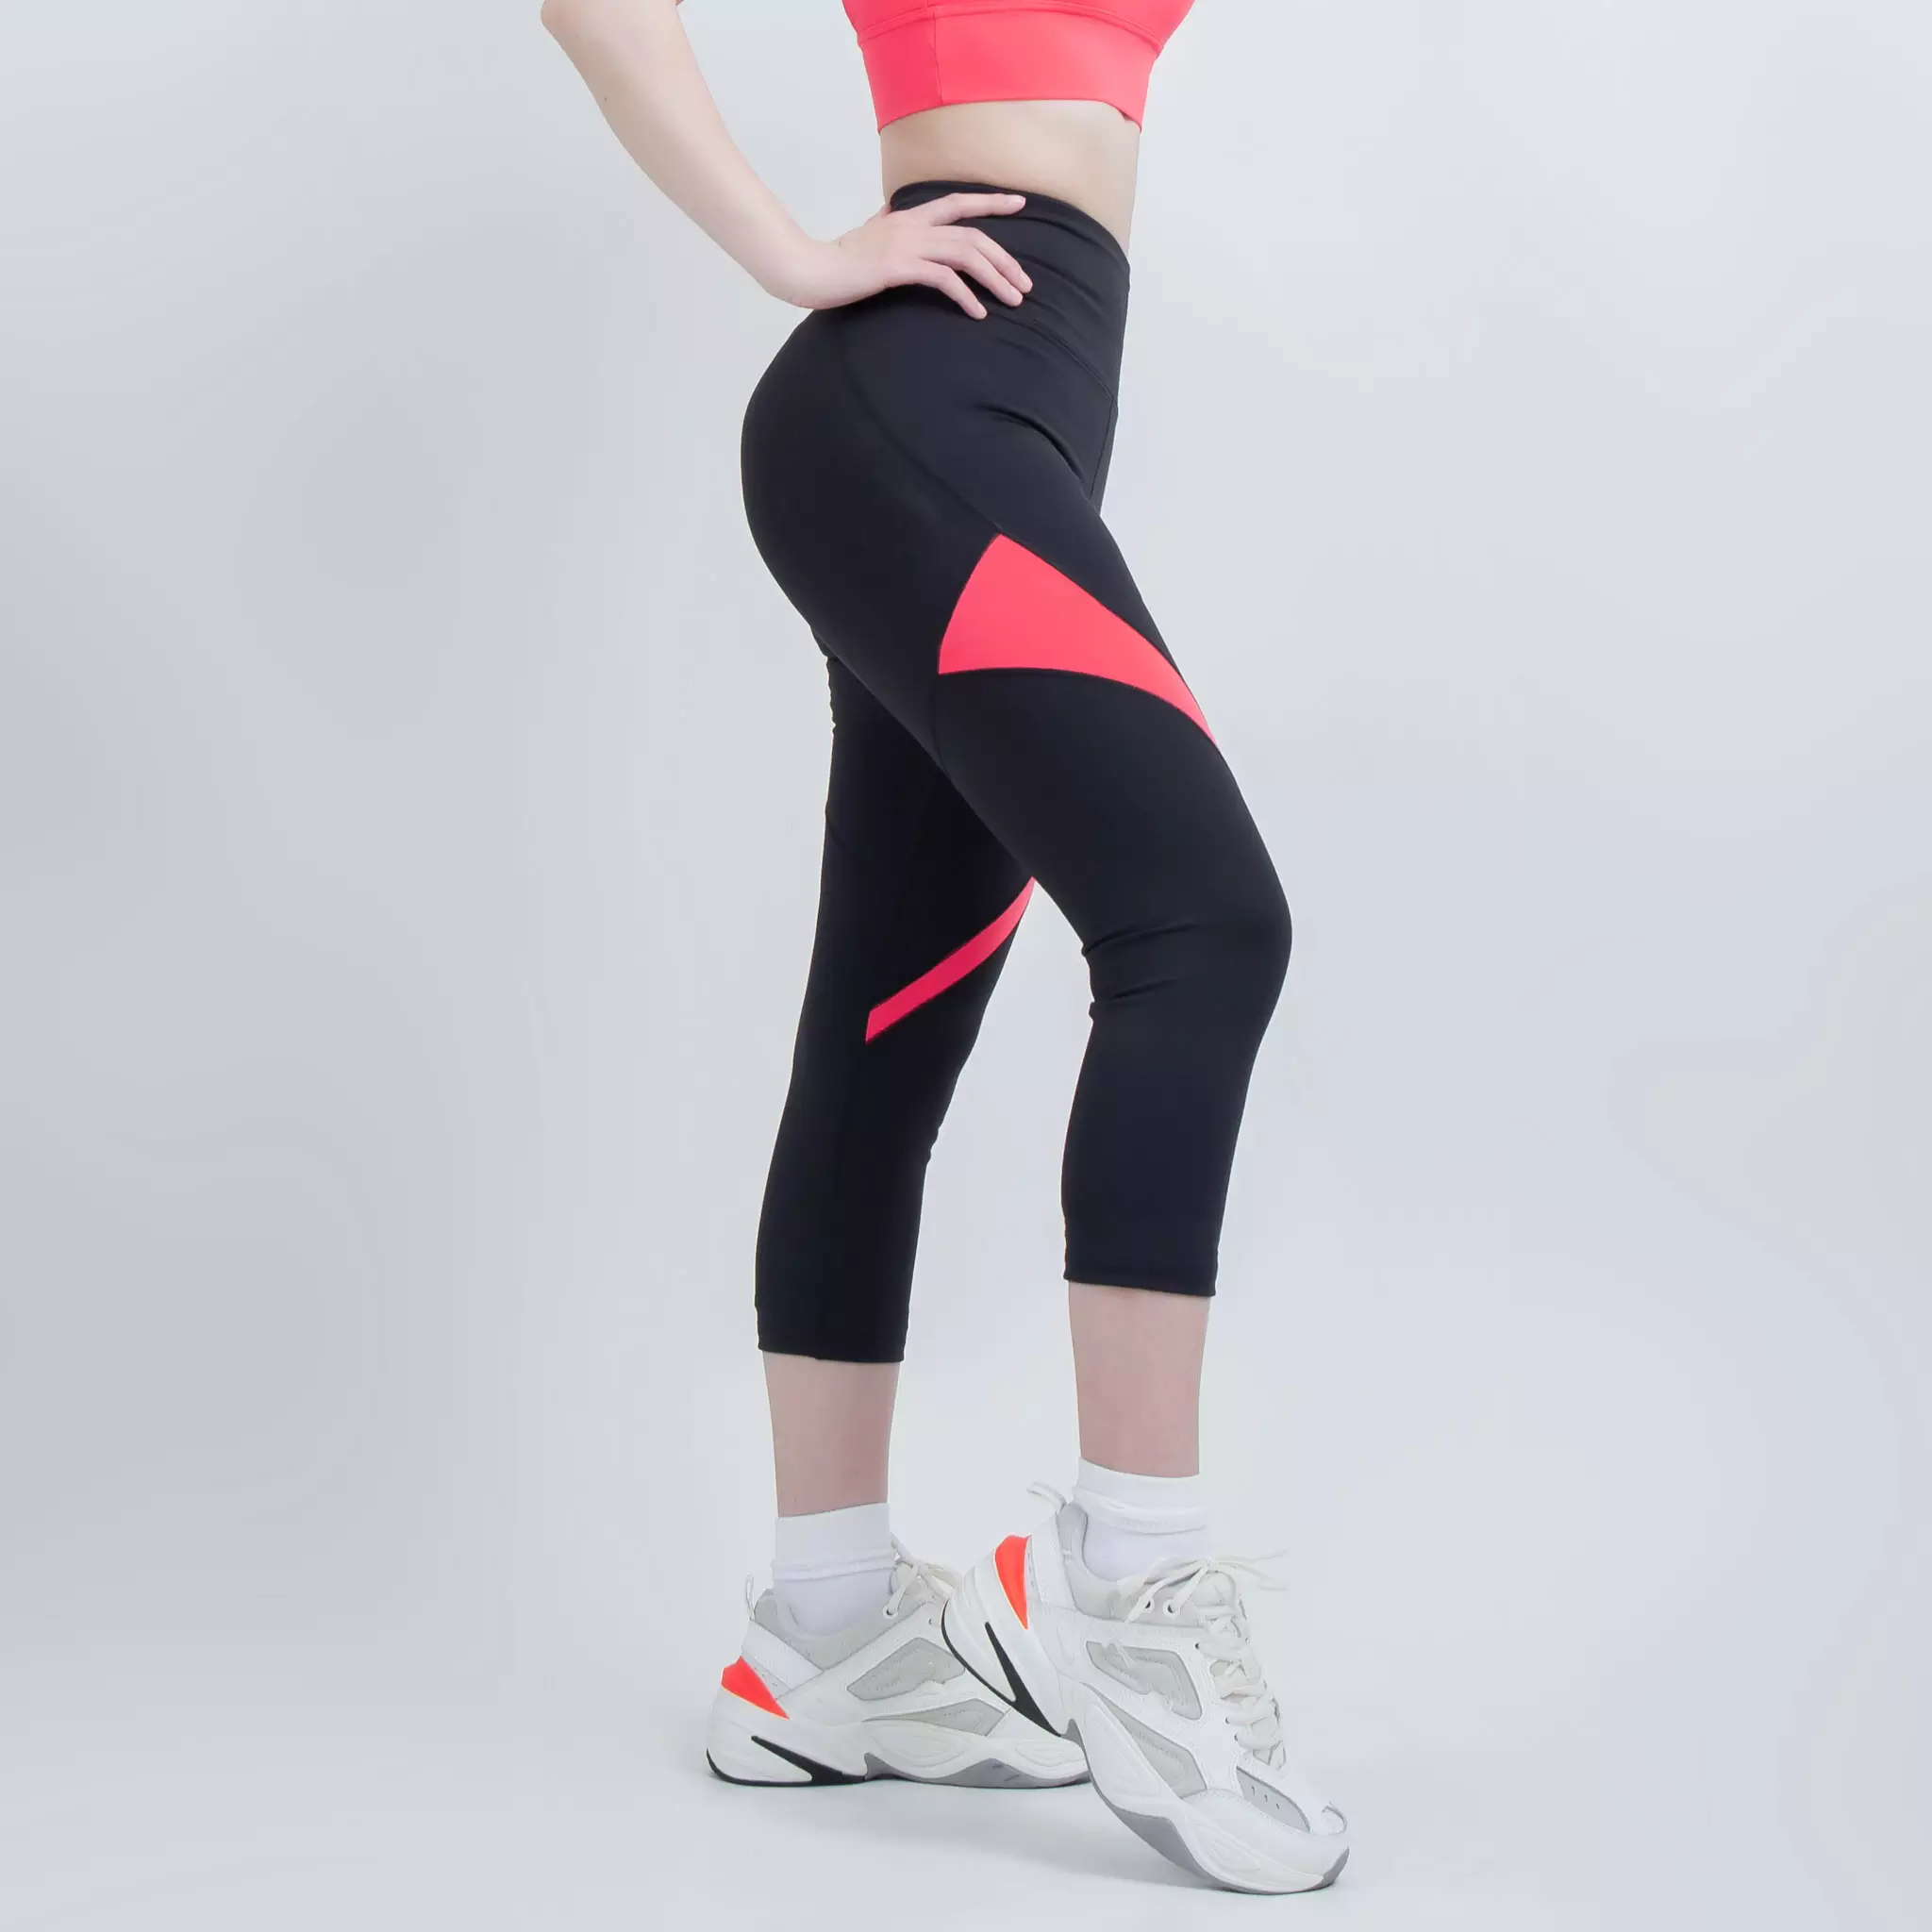  Quần lửng thể thao phối màu Gladimax G08 chất thun co giãn chiều, cạp cao tôn dáng phù hợp cho chạy bộ, yoga, tập gym 